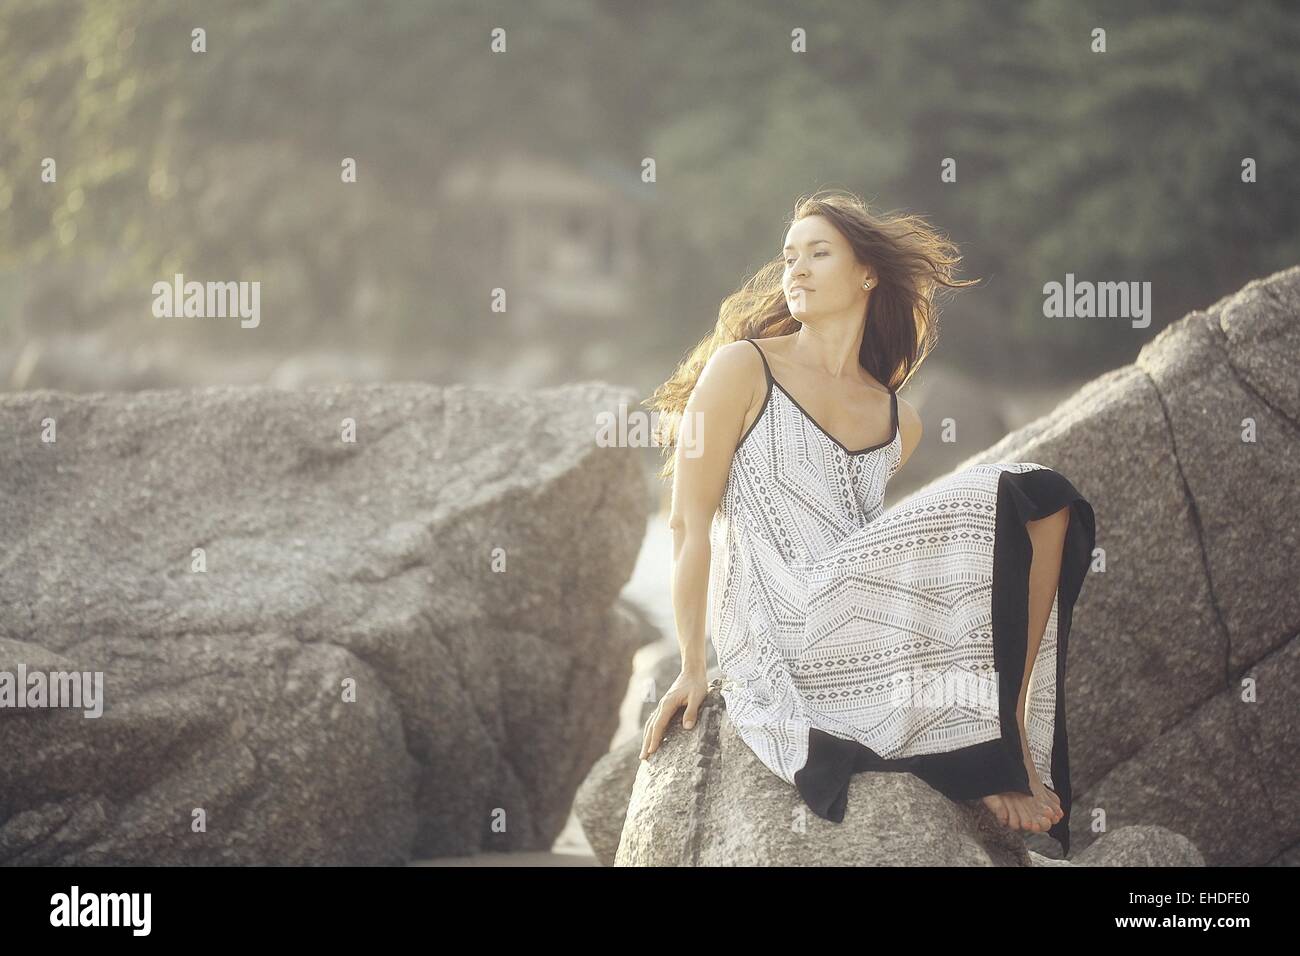 girl in a sundress summer on the rocks Model Stock Photo